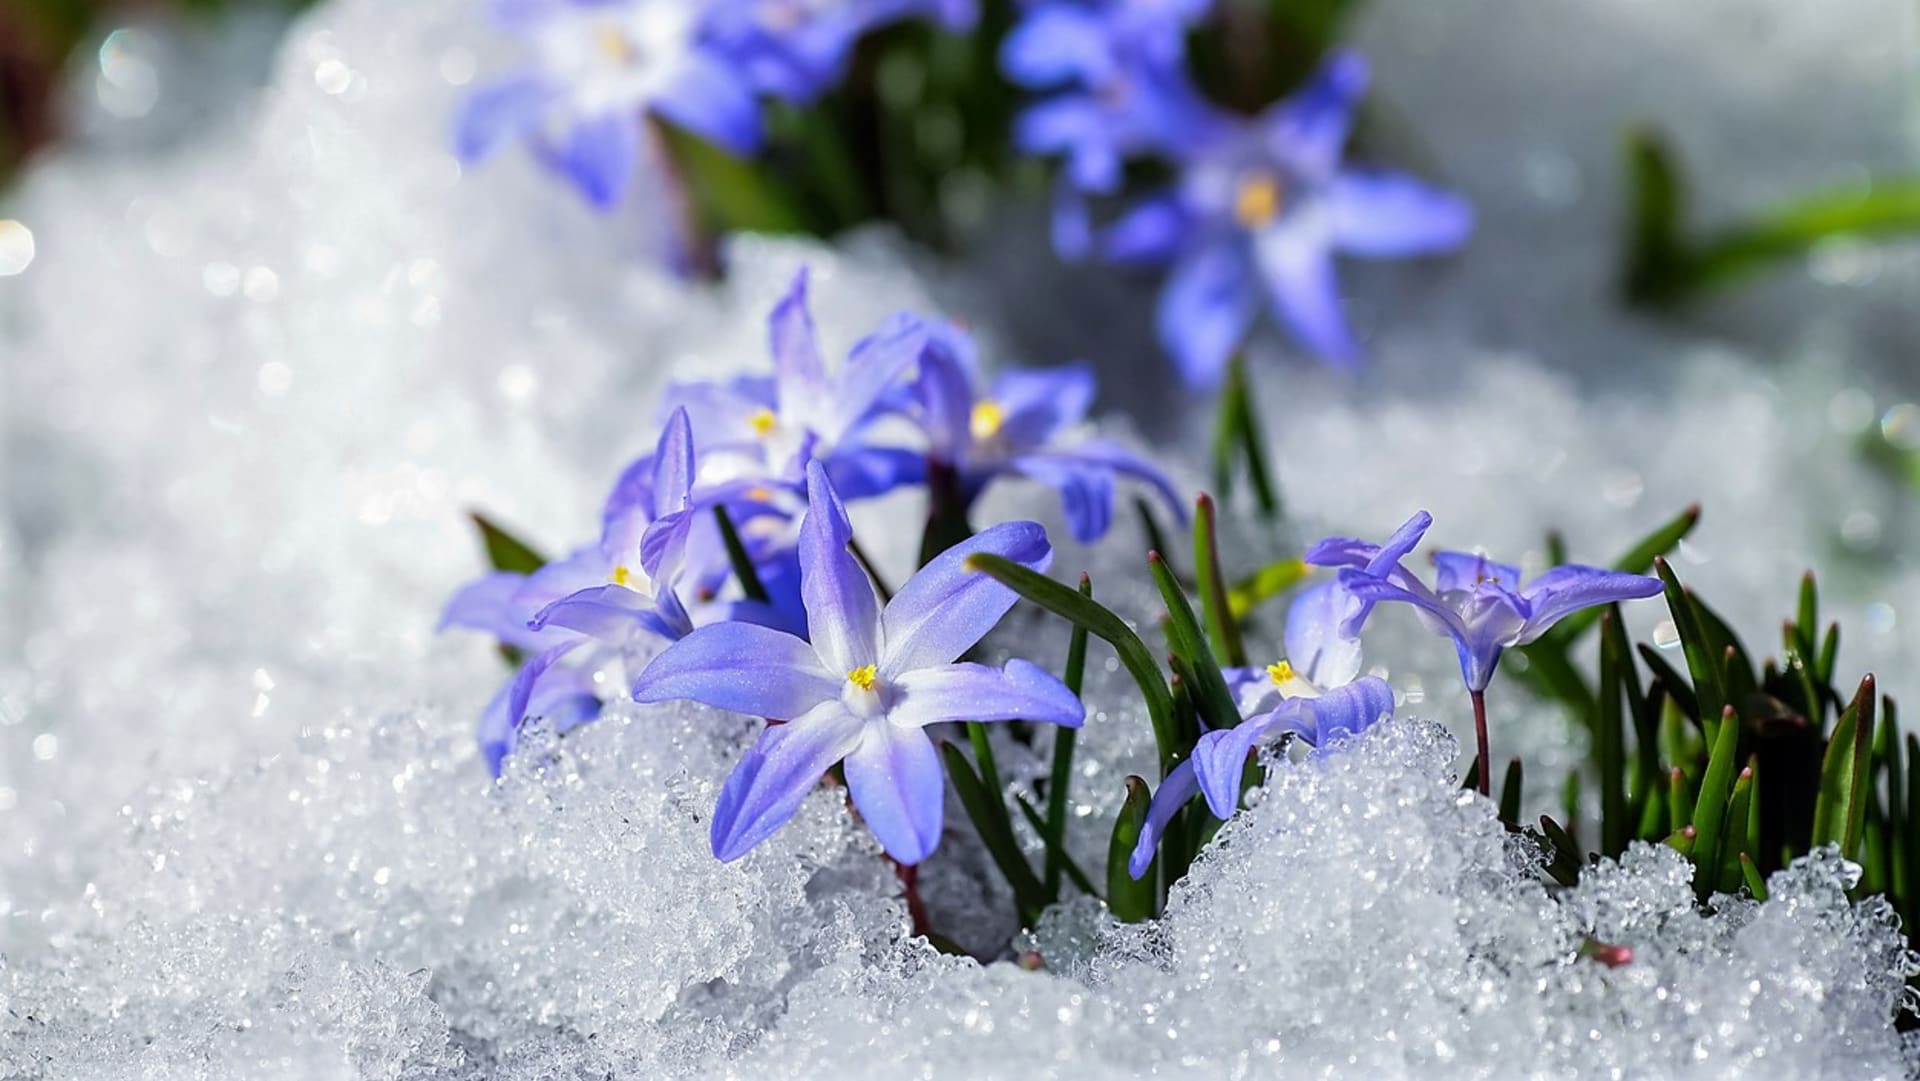  Ladoňky, ladoničky, puškínie, sasanky nebo kosatce většinou rozkvétají začátkem března, mnohdy nesměle vykukují ještě ze sněhu, a tak se v květu potkávají se známějšími sněženkami, bledulemi či krokusy.  Na snímku ladonička bělomodrá (Chionodoxa luciliae) 